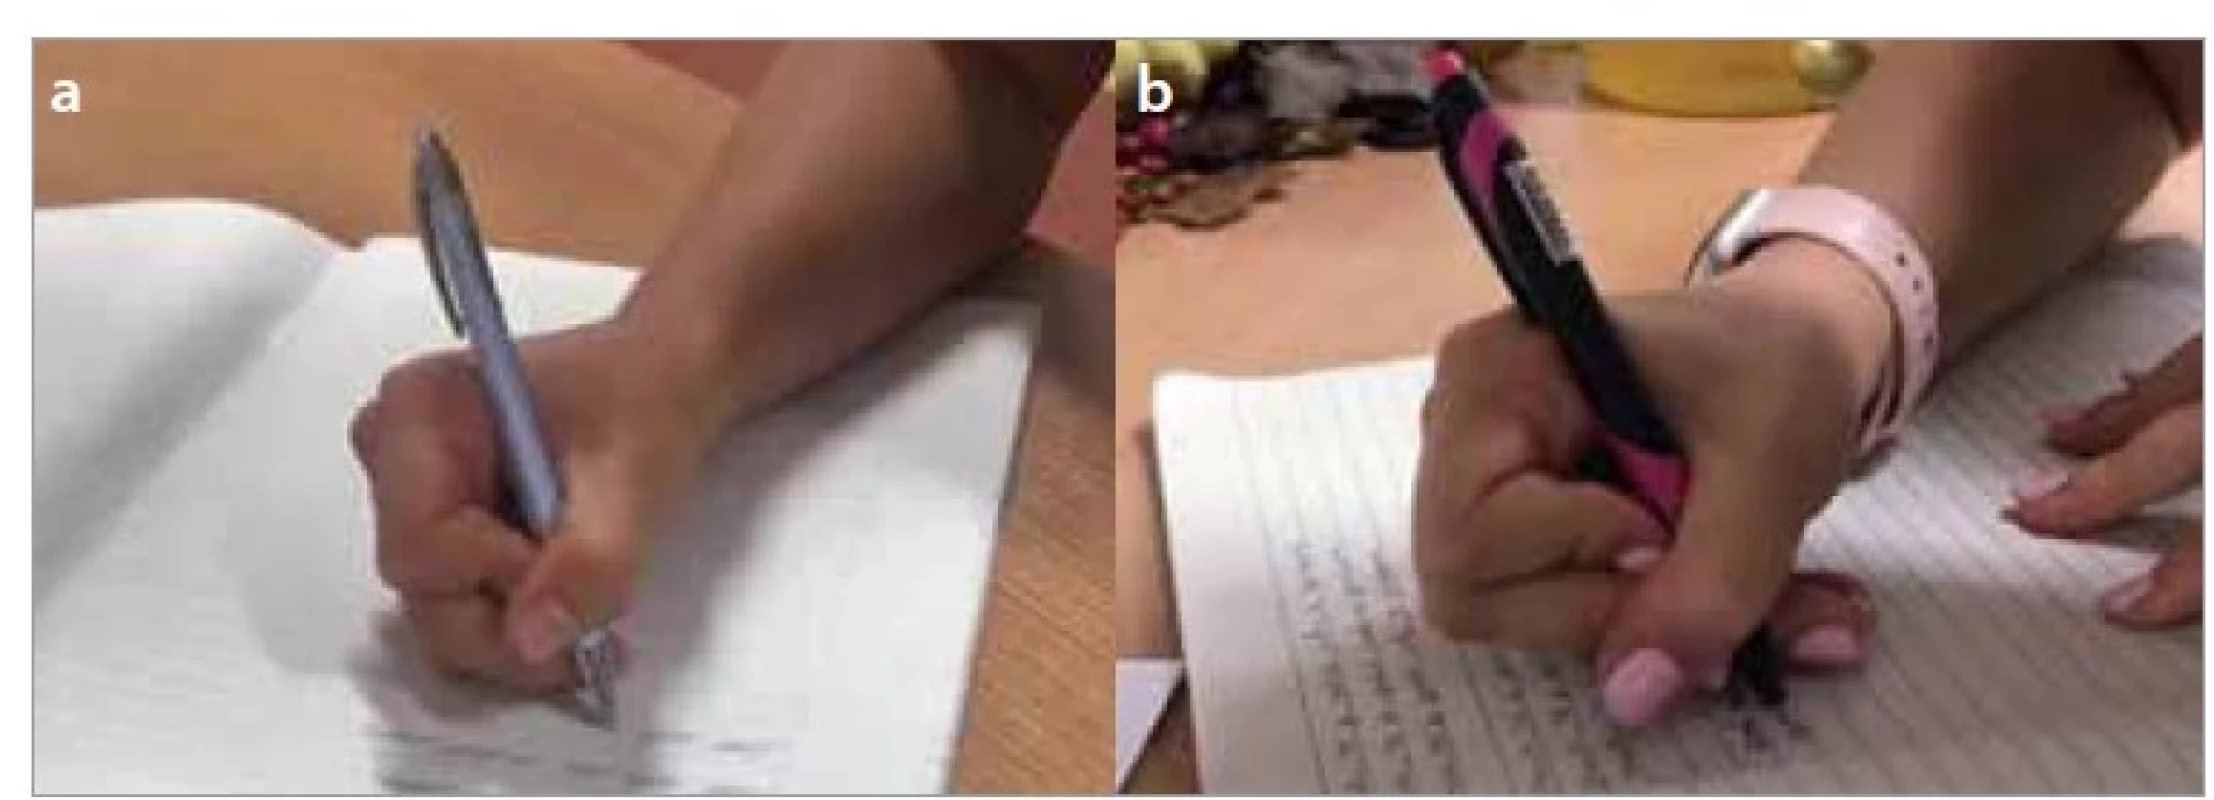 a,b. Boční palcový úchop s palcem přes ukazovák – a) tříprstý, b) čtyřprstý.<br>
Fig. 5a,b. Lateral thumb wrap grip – a) thumb wrap tripod grip, b) thumb wrap
quadruped grip.